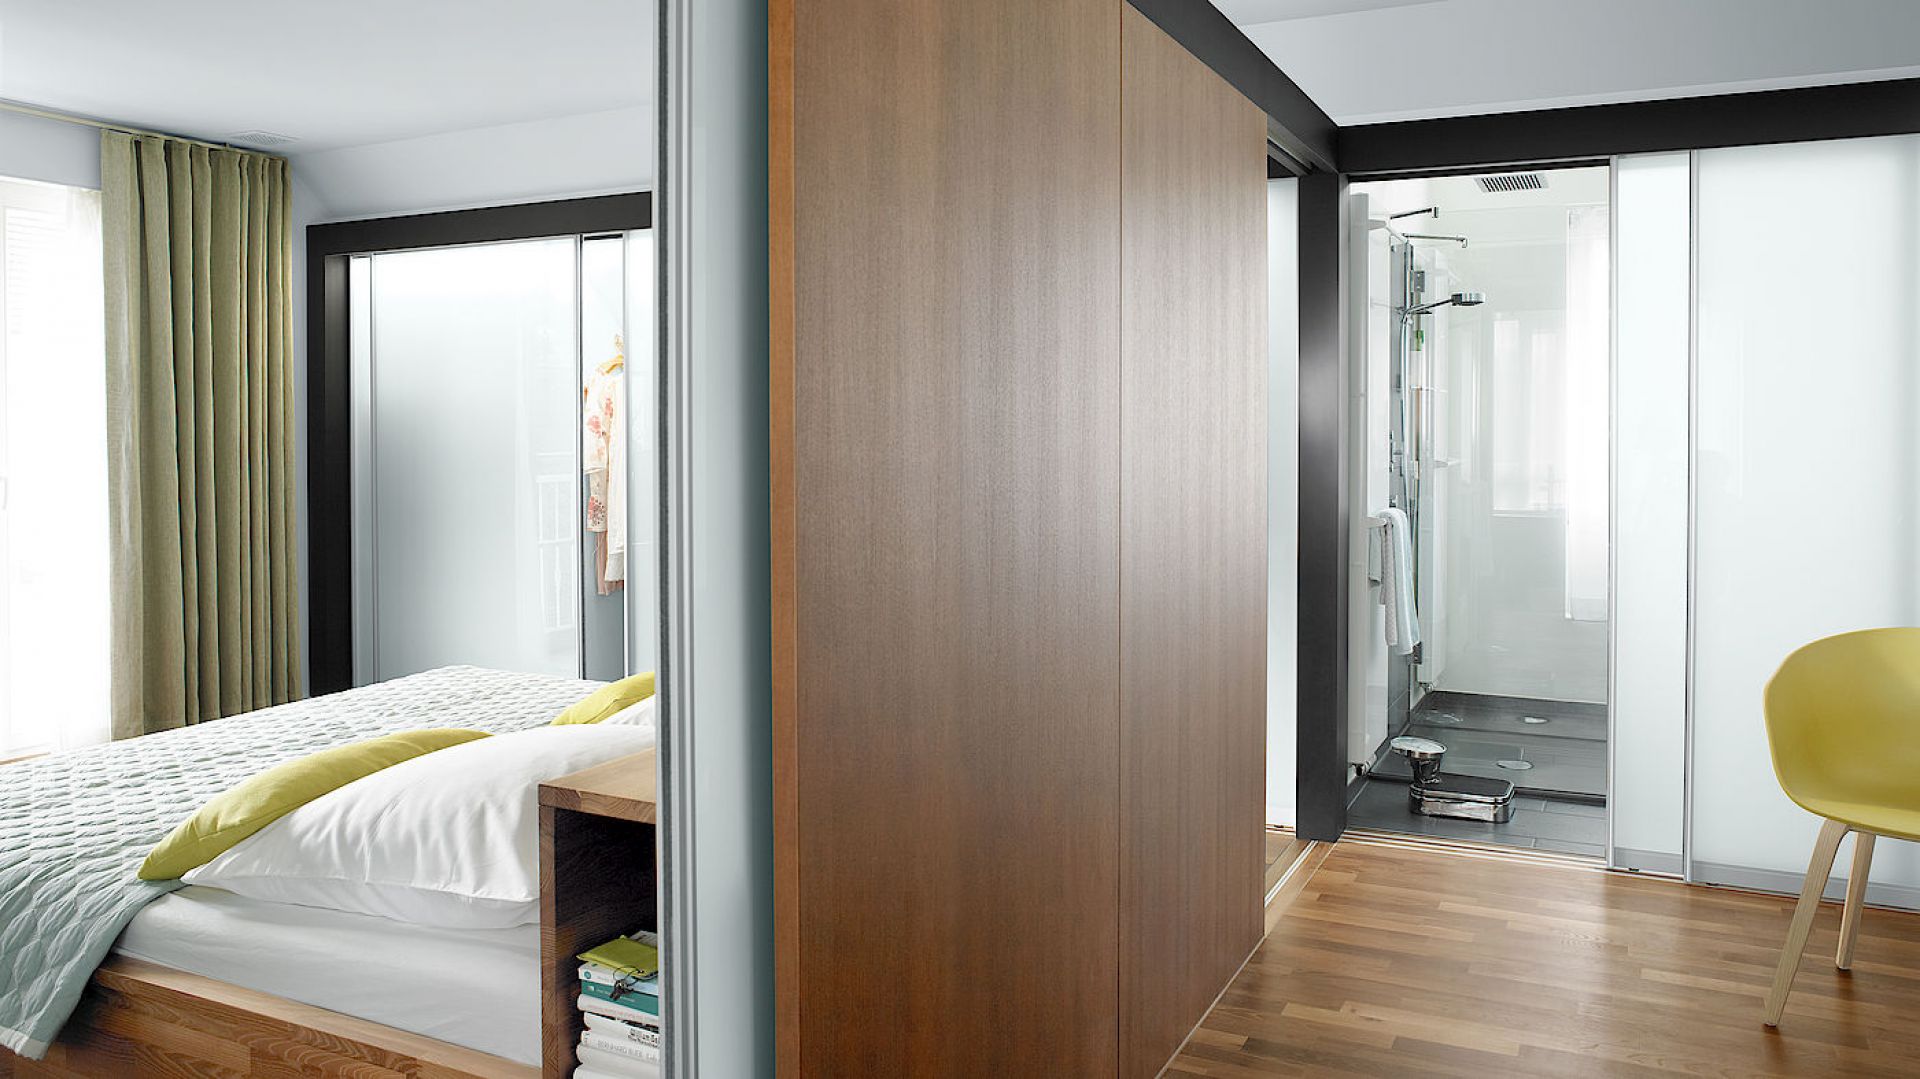 Drzwi przesuwne S1500 firmy Raumplus, oddzielające sypialnię od łazienki. Fot. Raumplus